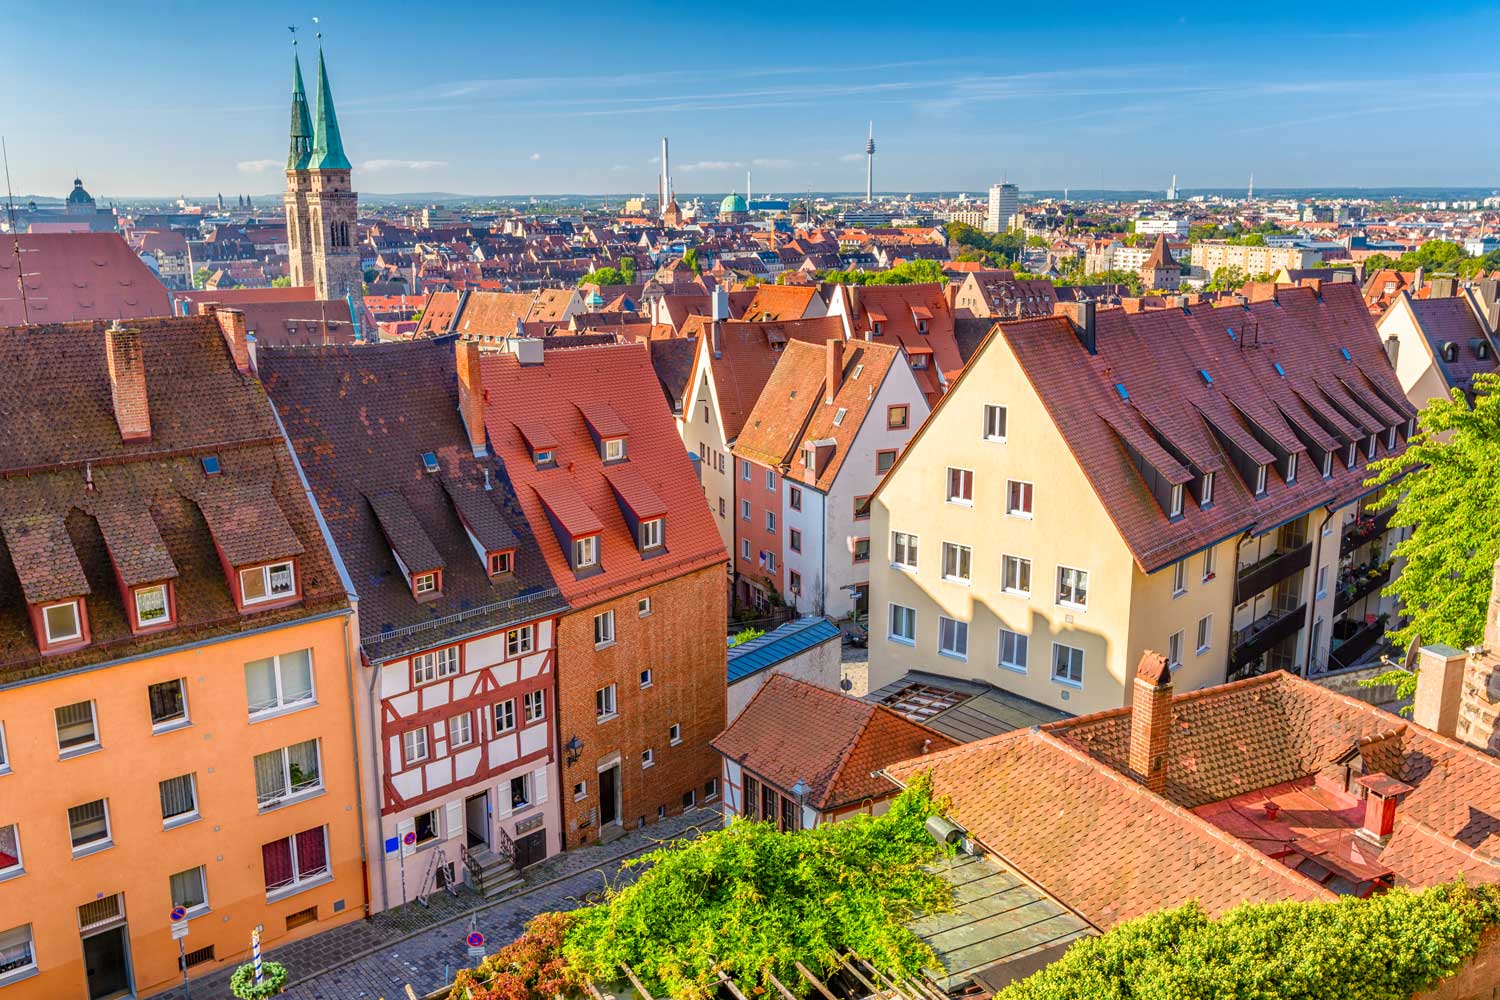 Immobilienmarkt Nürnberg – Preise, Chancen und Trends 2024